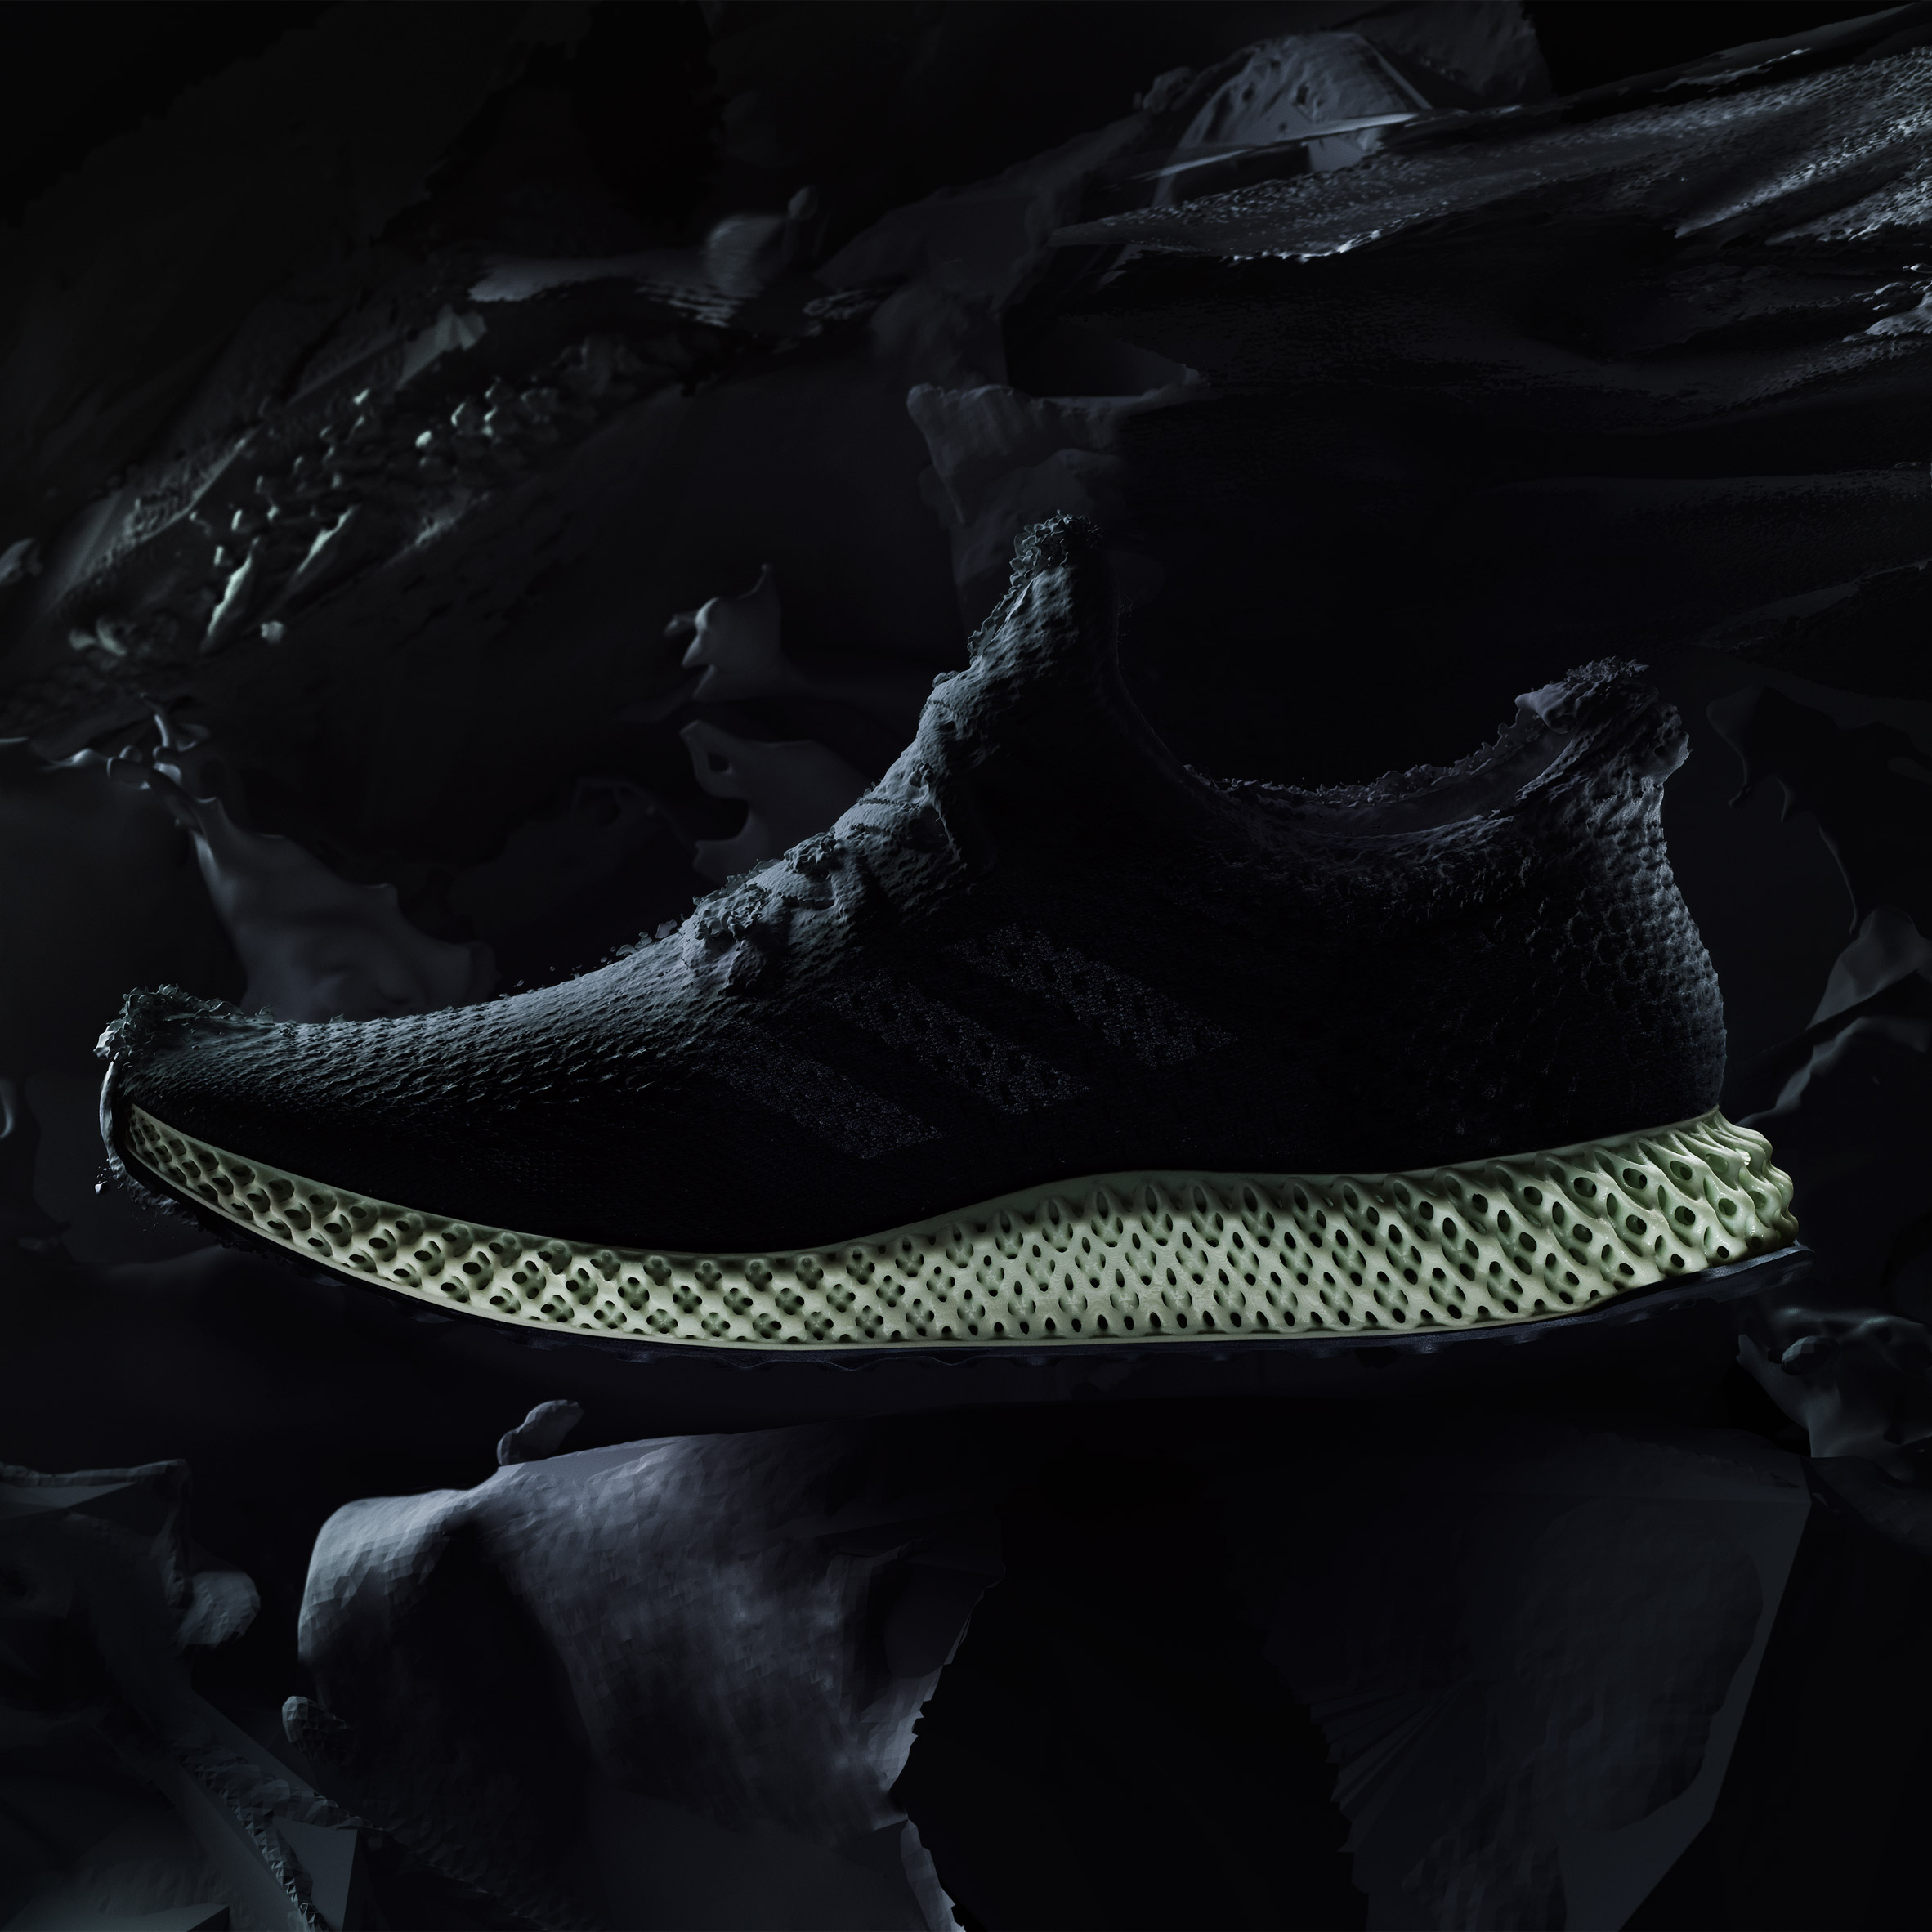 Adidas shapes Futurecraft 4D shoe soles 